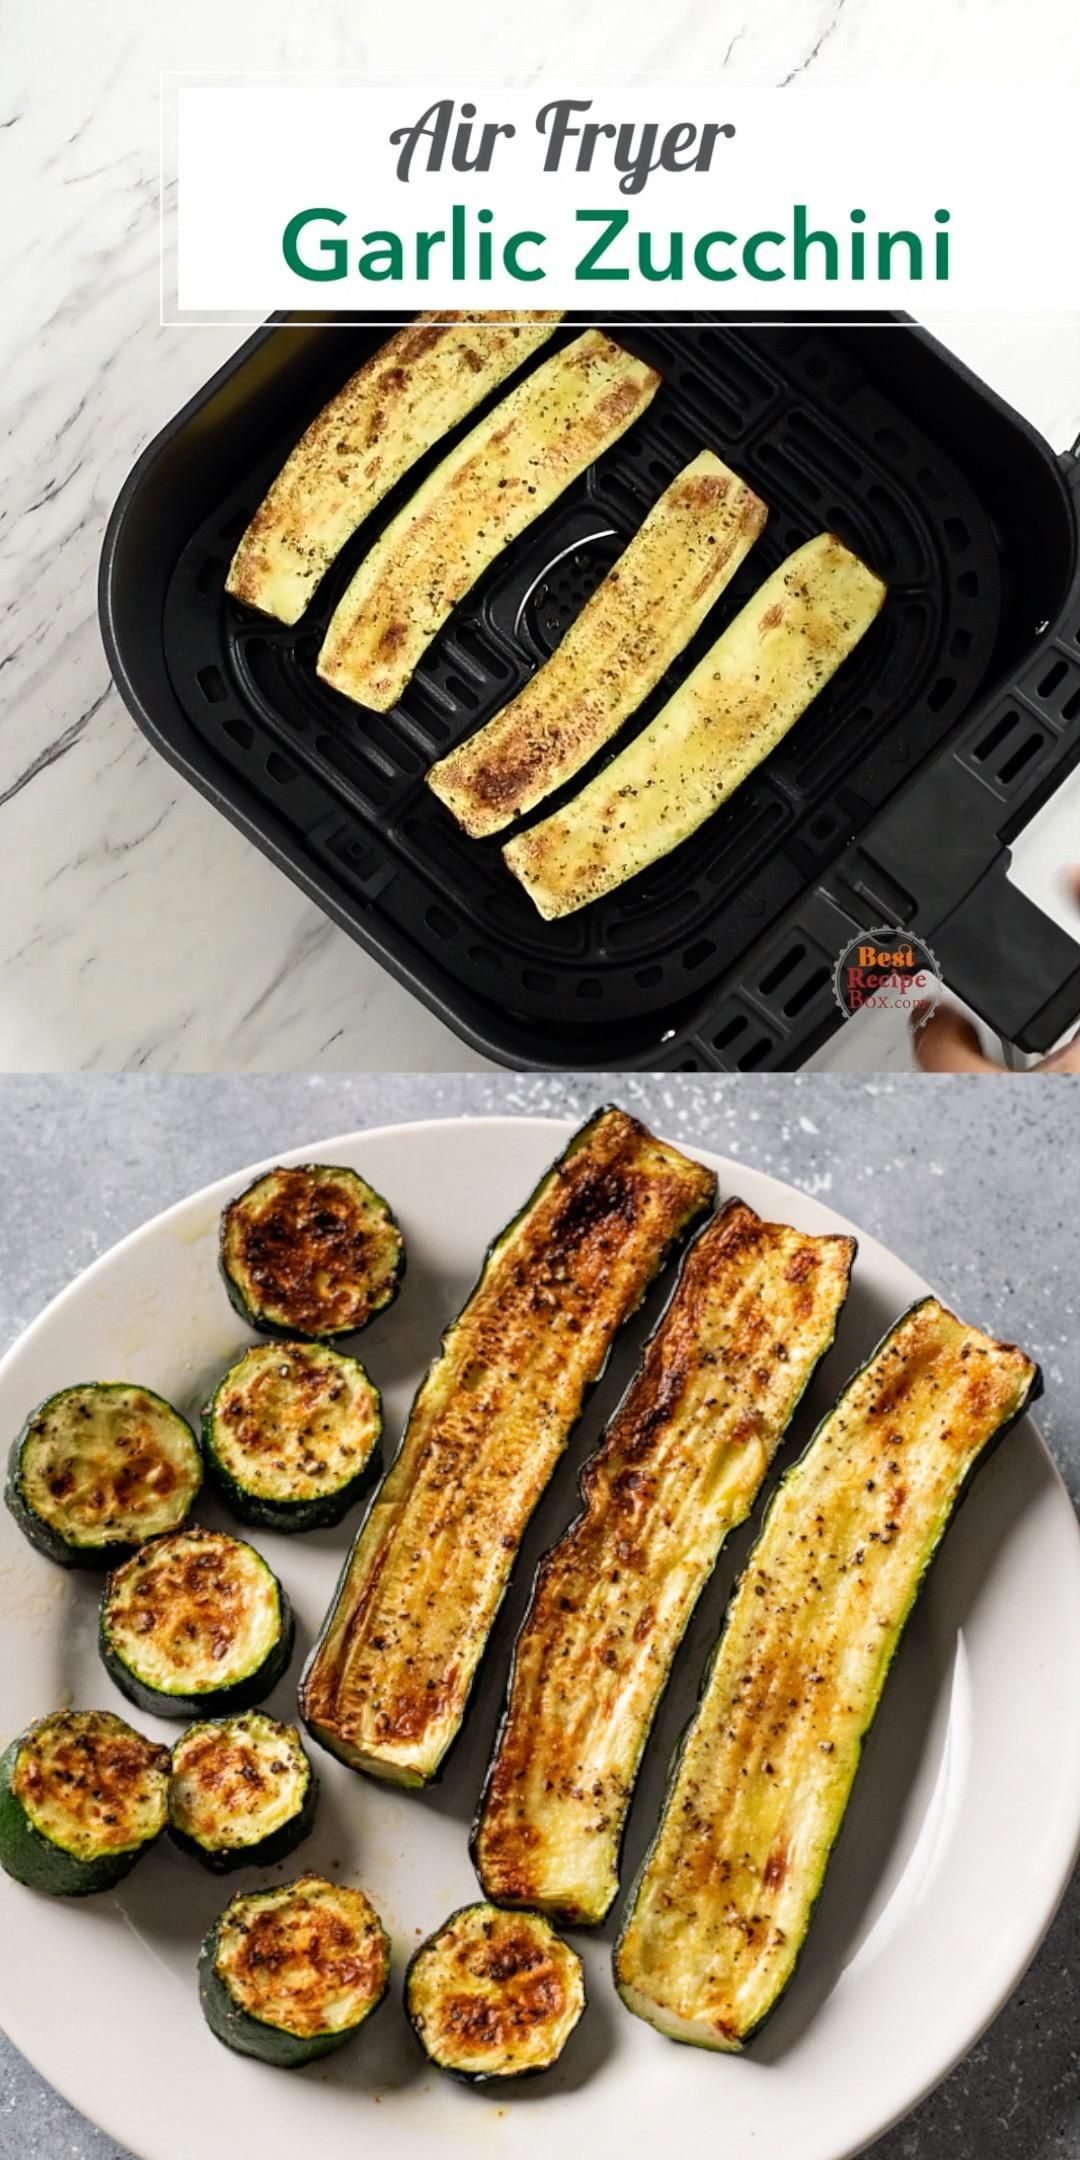 Healthy Air Fryer Garlic Zucchini -   25 air fryer recipes healthy vegetables ideas